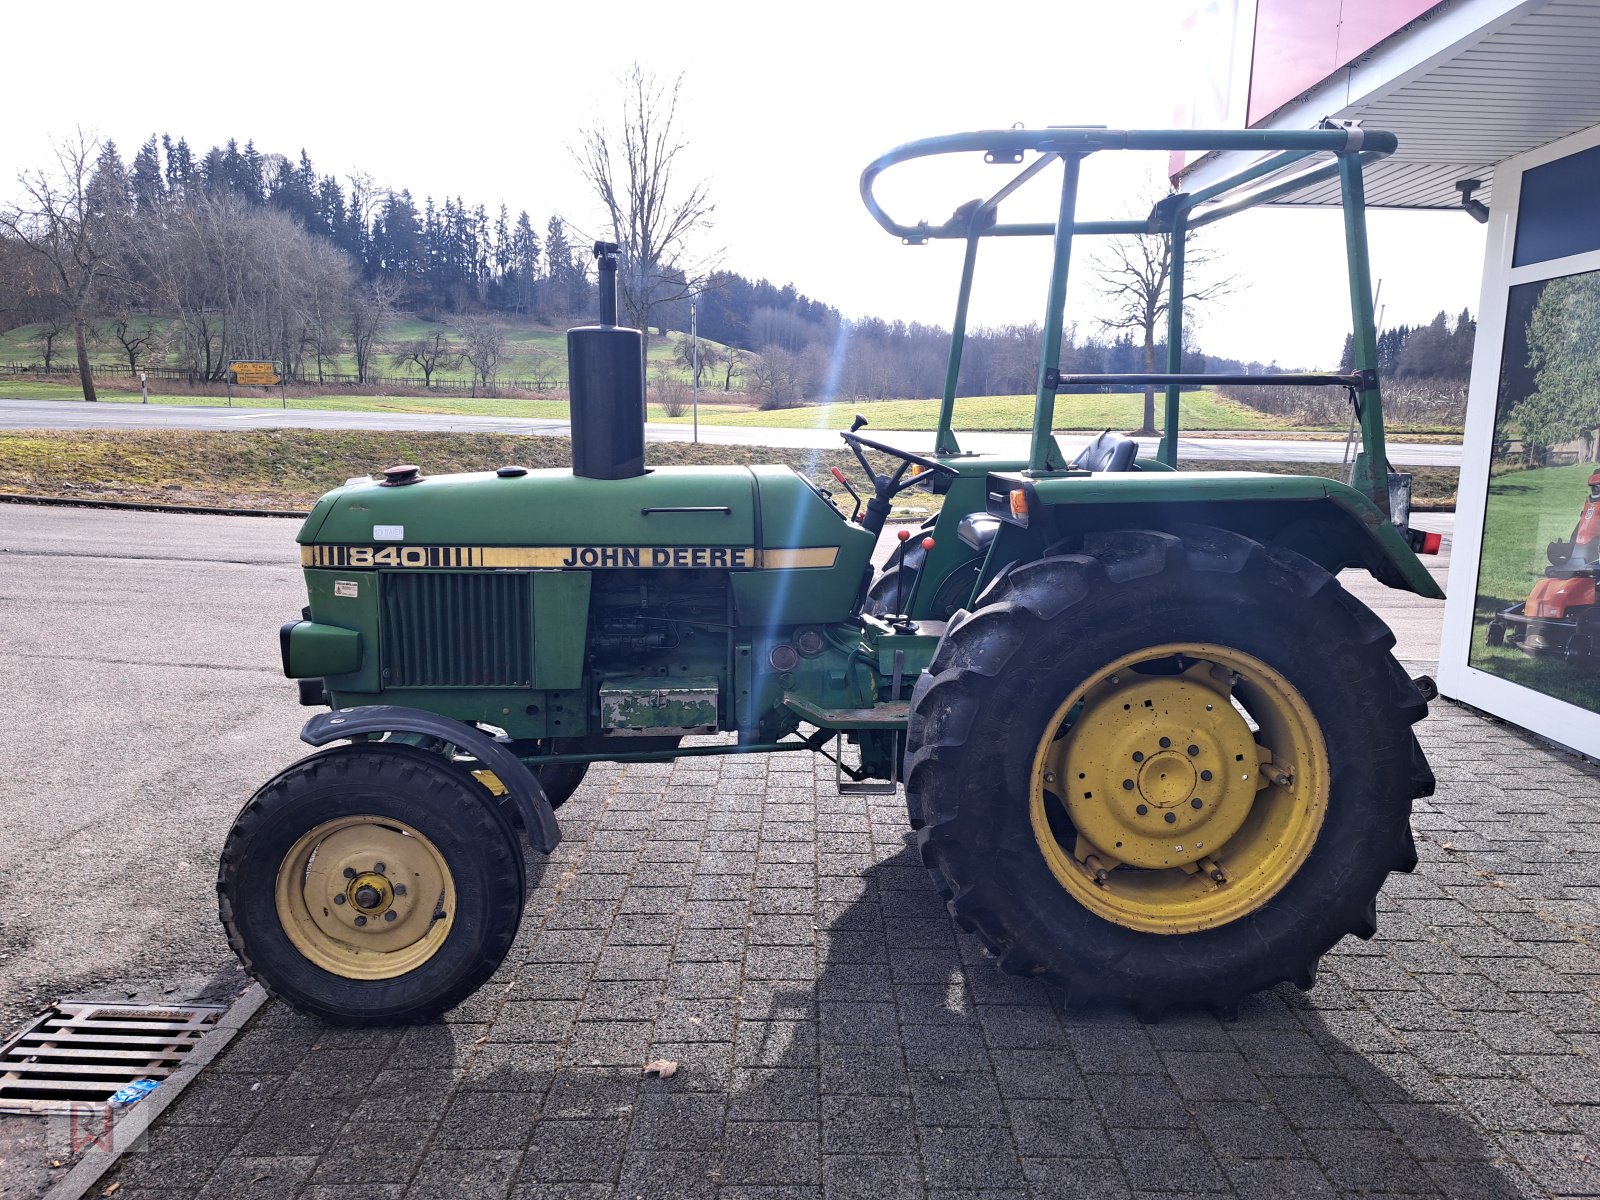 Traktor des Typs John Deere 840 E, Gebrauchtmaschine in Meßkirch (Bild 1)